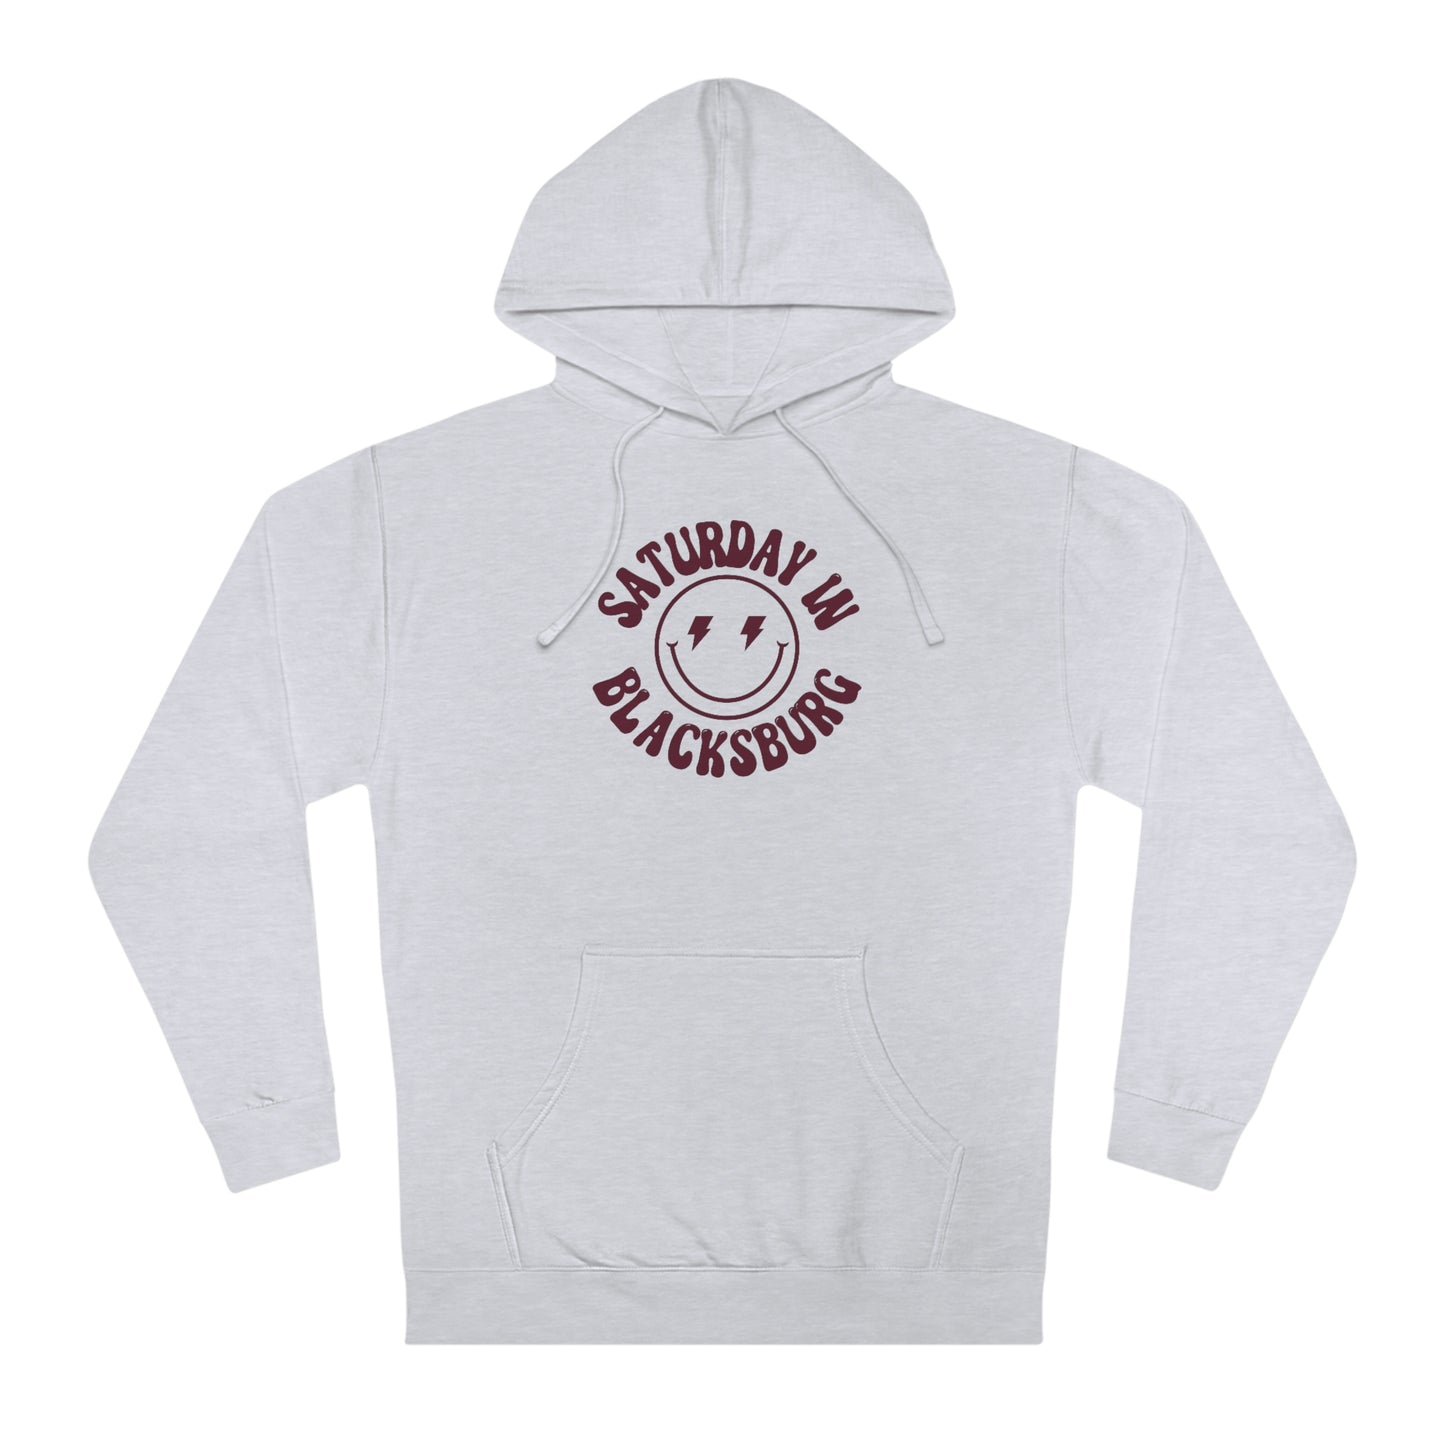 Smiley Blacksburg Hooded Sweatshirt - GG